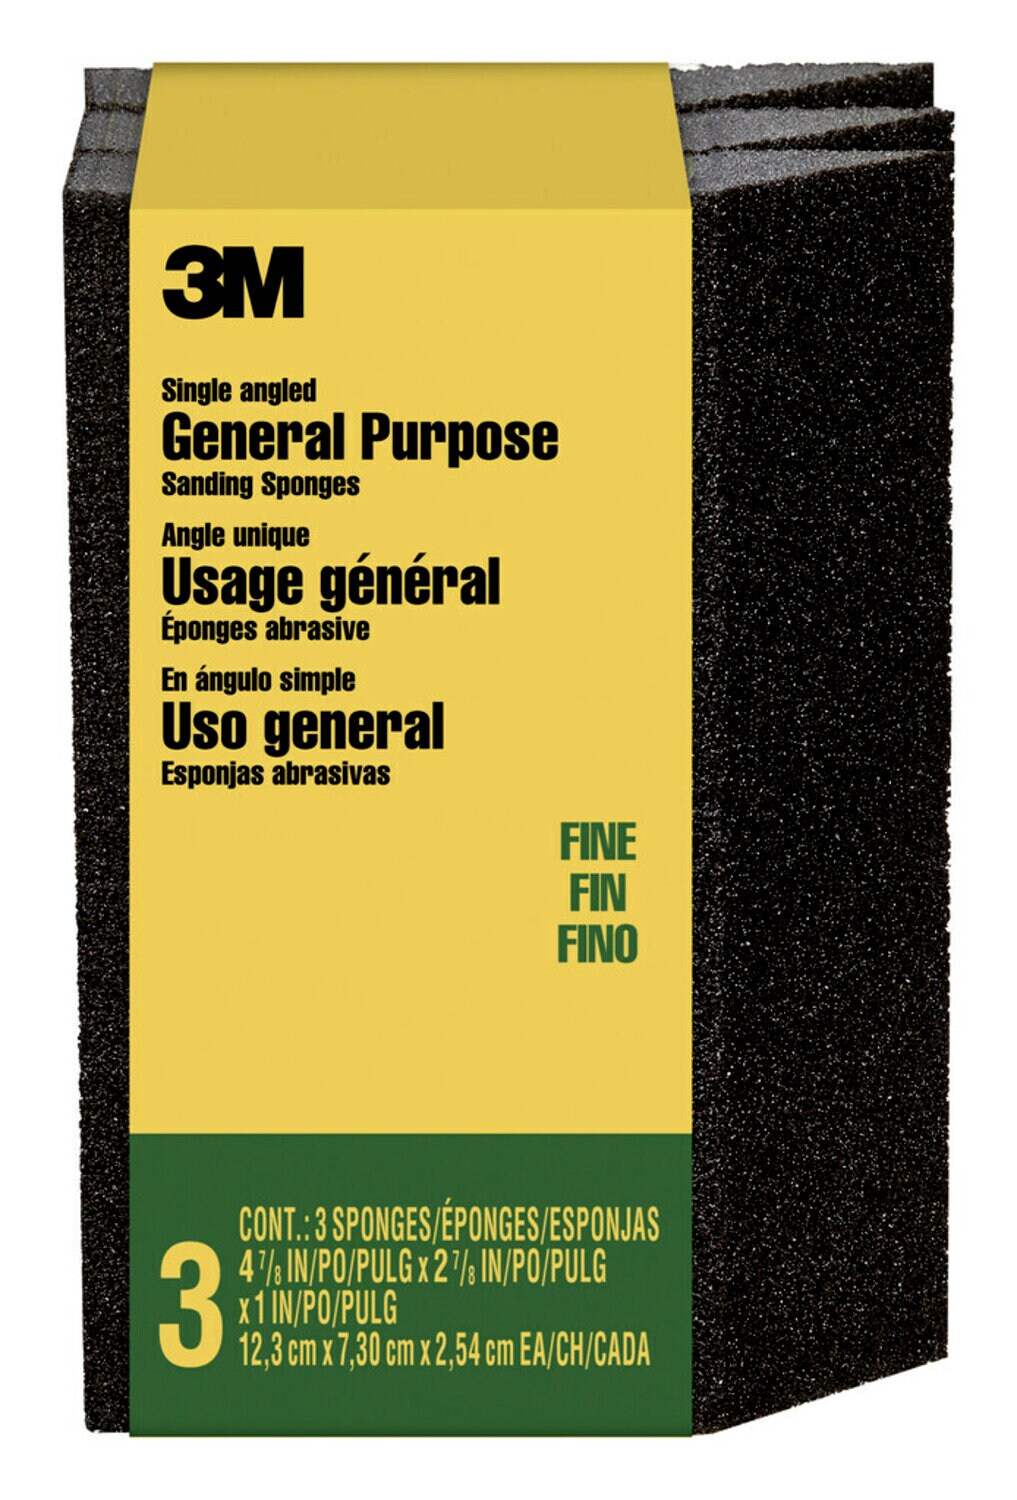 7100175194 - 3M General Purpose Sanding Sponge CP040-3PK, Single Angle, 2 7/8 in x 4 7/8 in x 1 in, Fine, 3/pk, 6 pks/cs